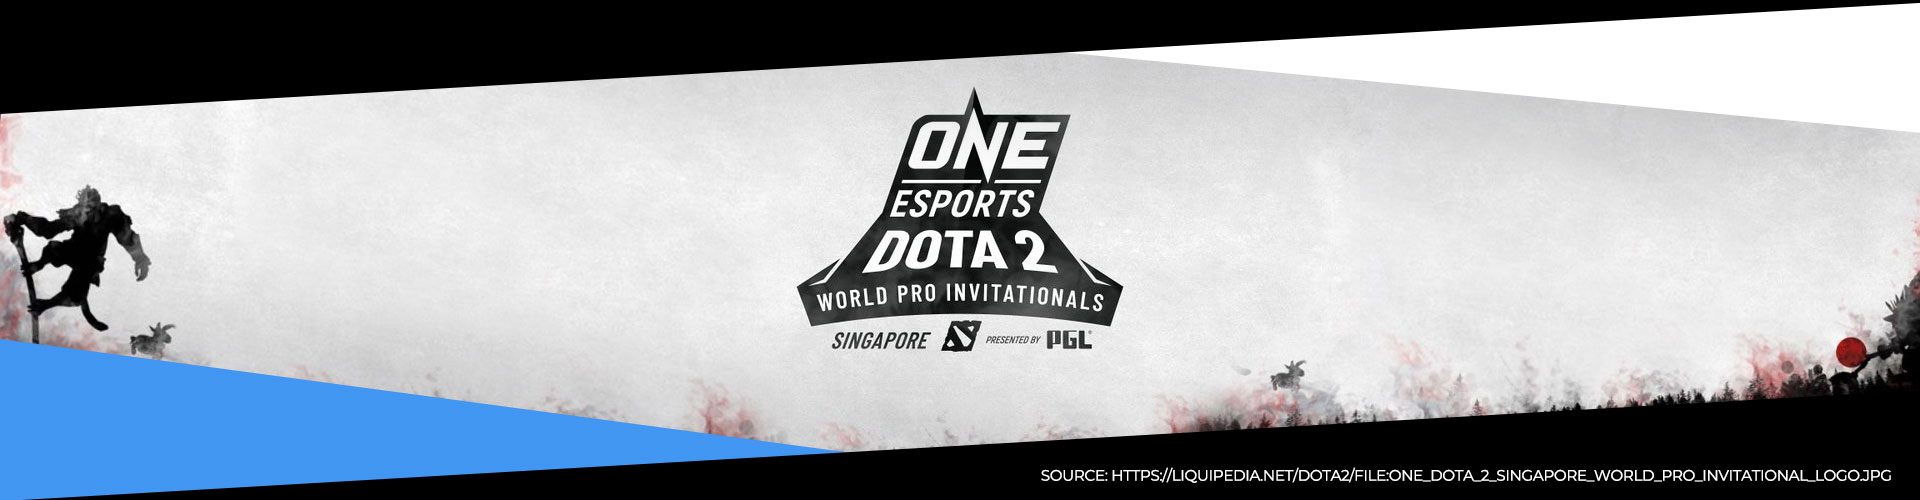 Denna eventsida för ONE Esports Dota 2 innehåller all information om turneringen.